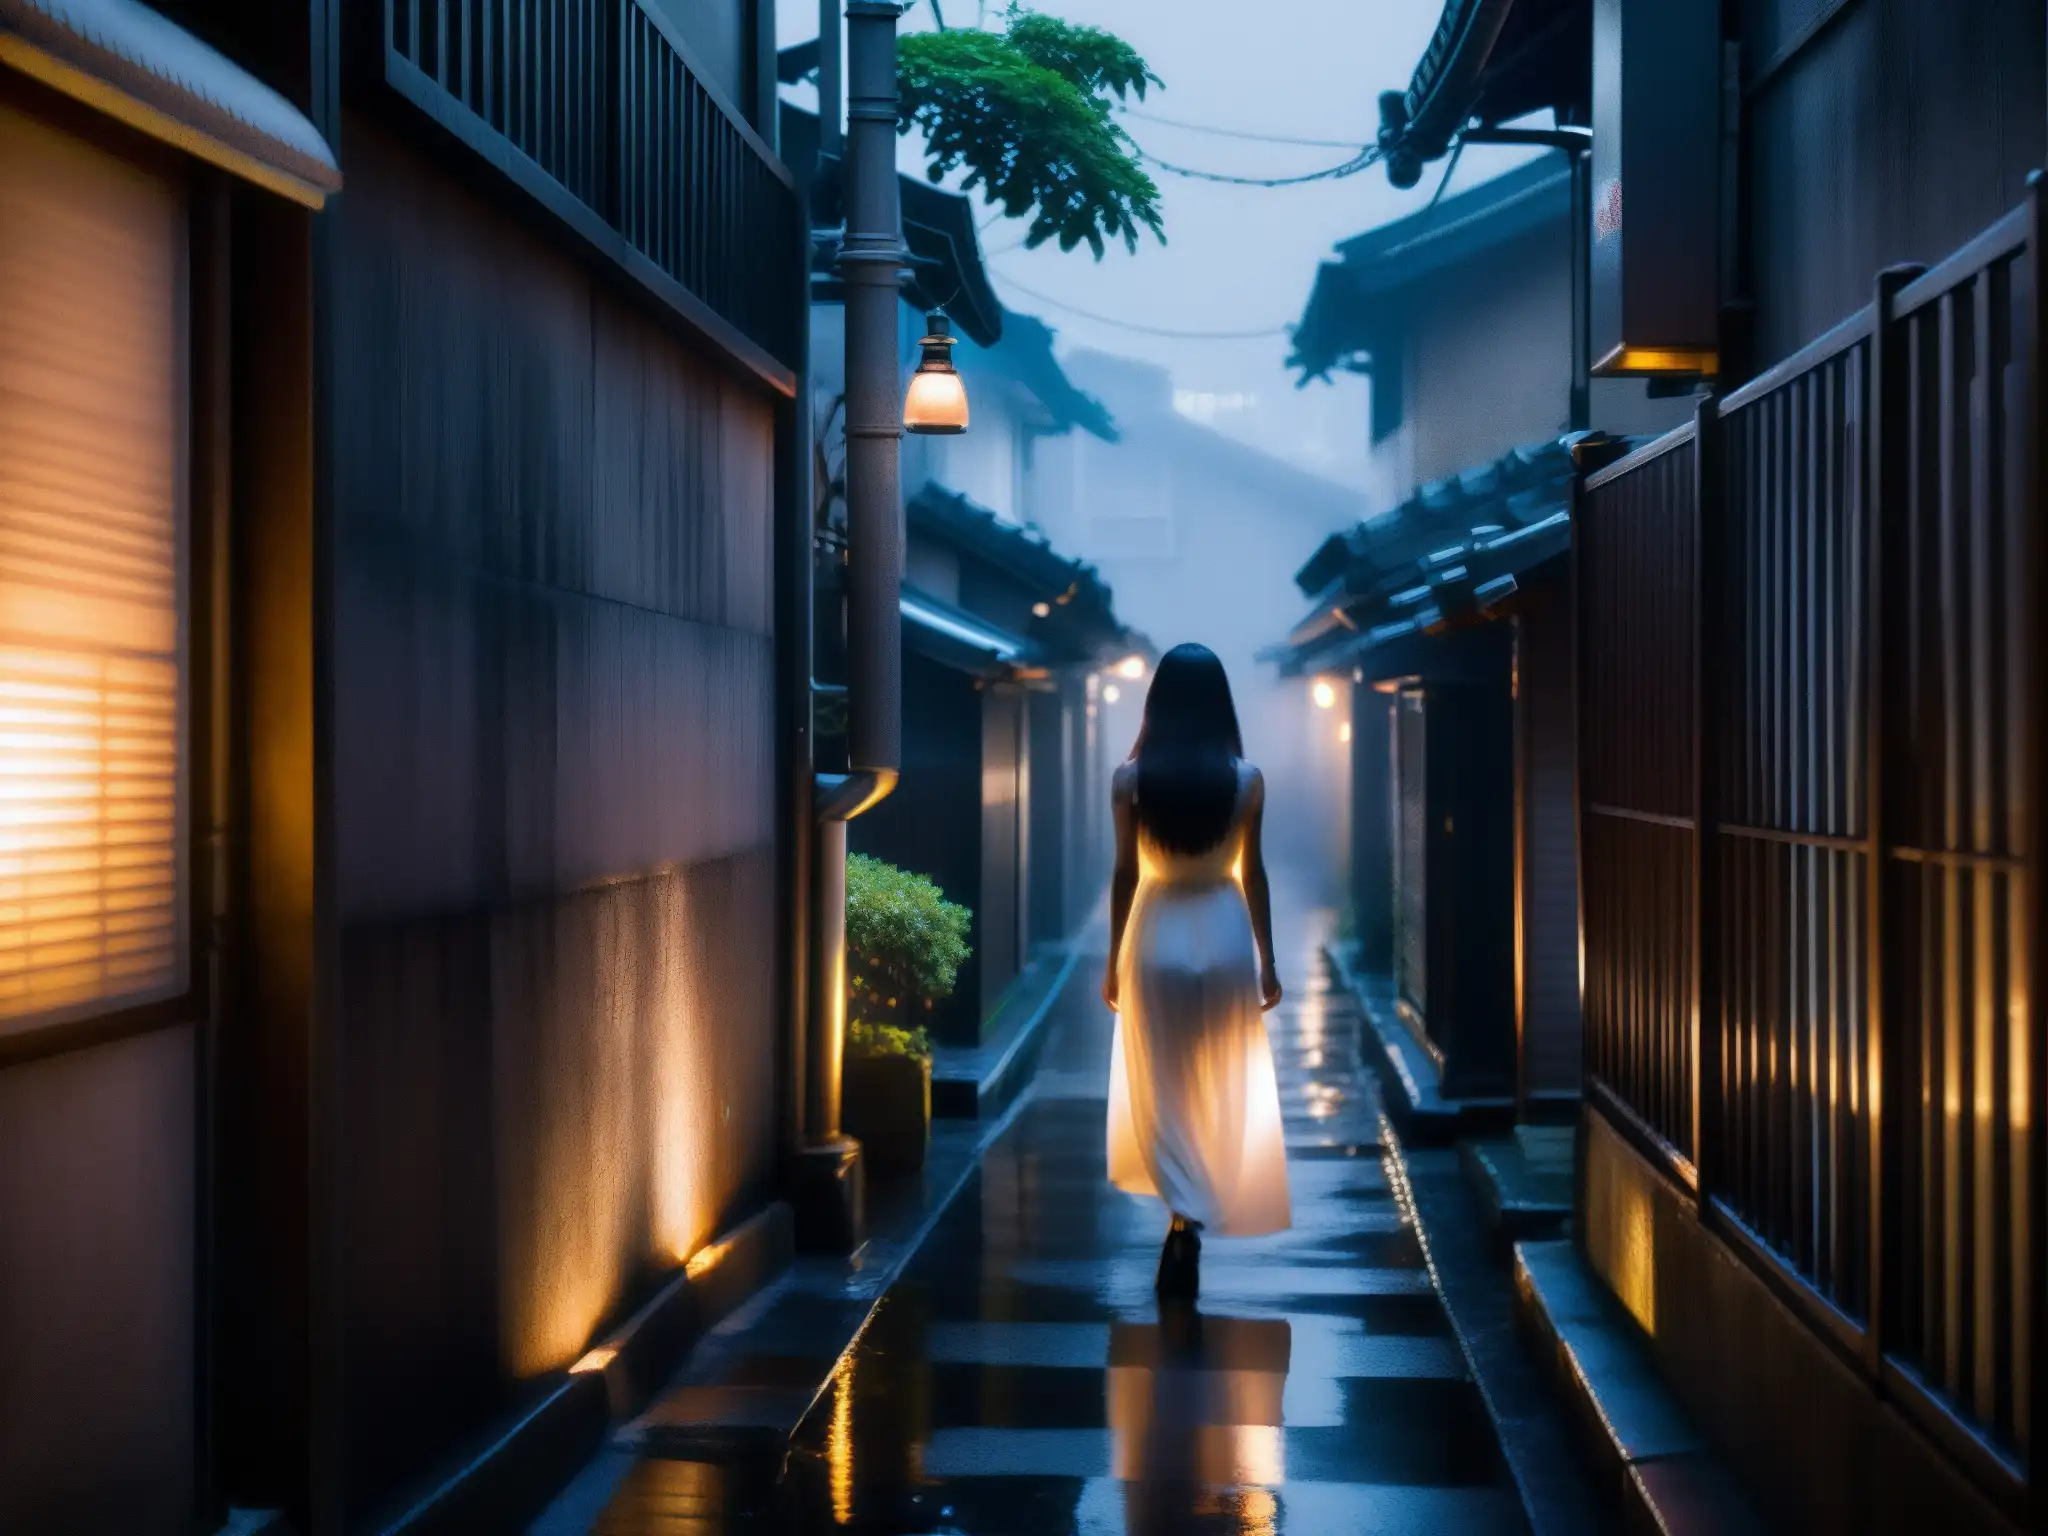 En un oscuro callejón de Tokio, una figura fantasmal con vestido blanco flota amenazante